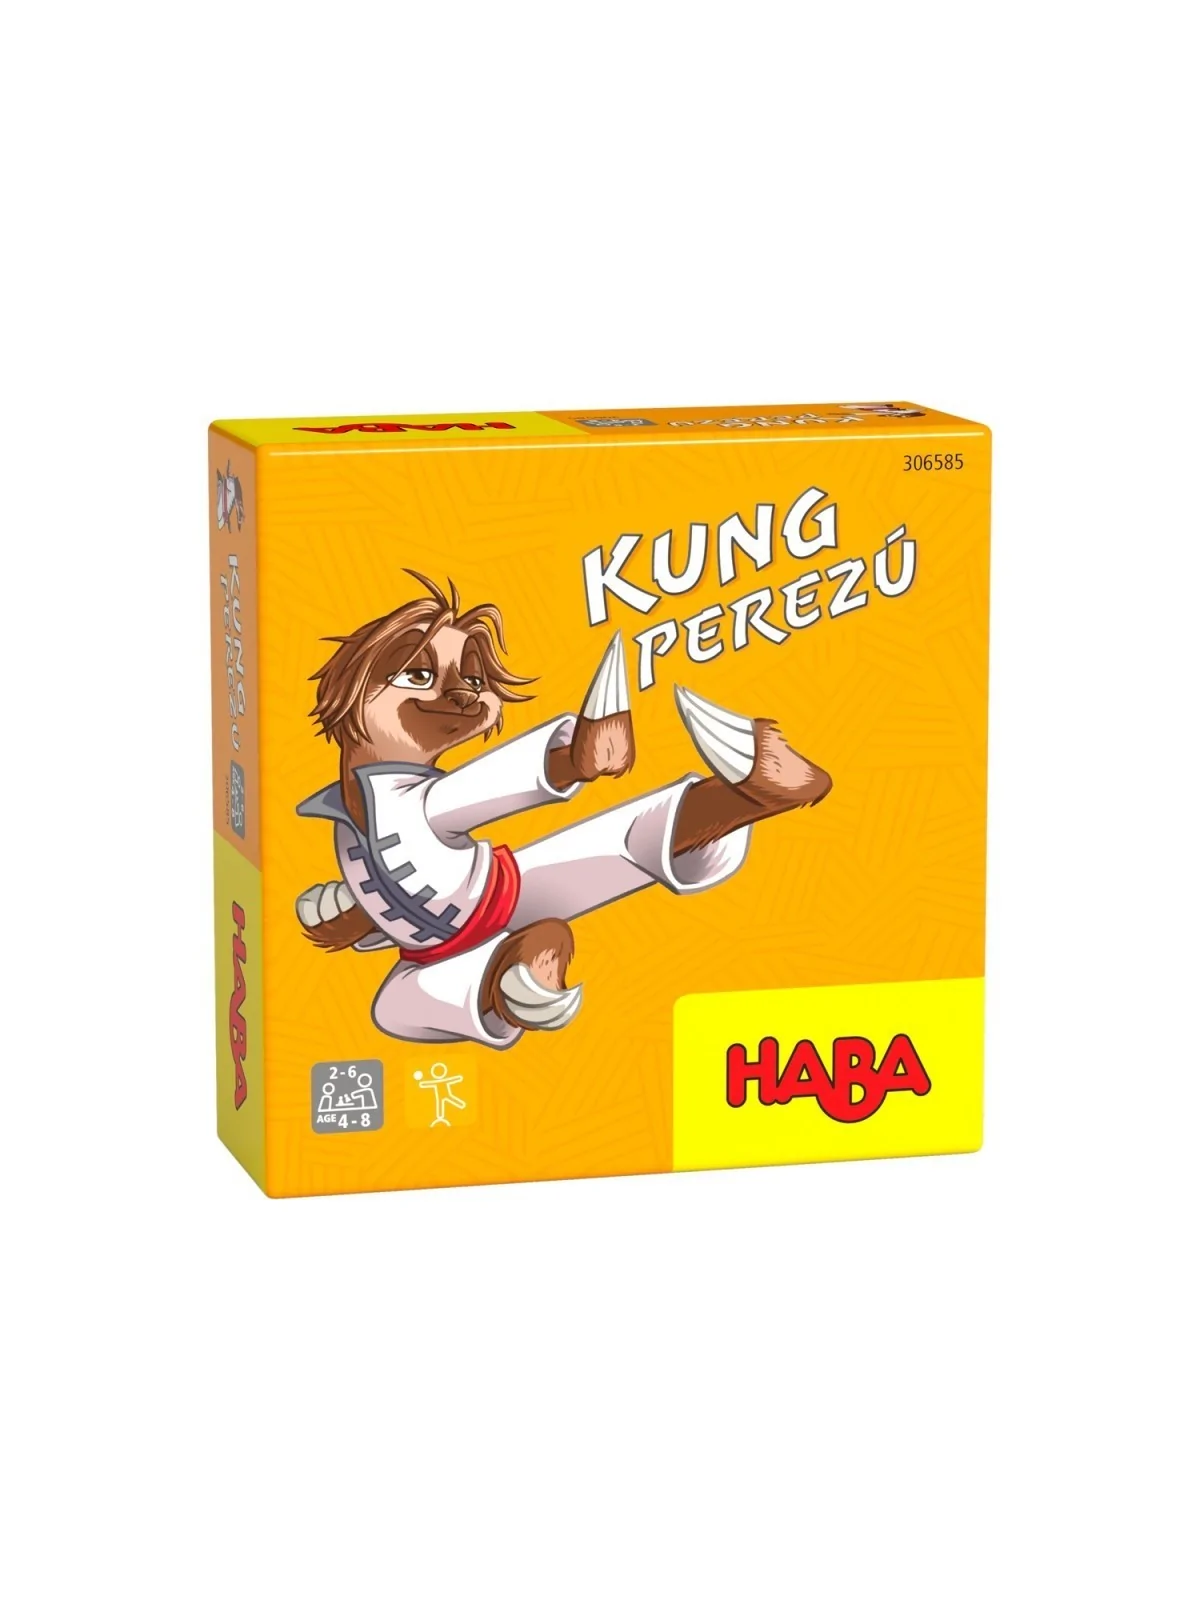 Comprar Kung Perezú barato al mejor precio 6,99 € de Haba